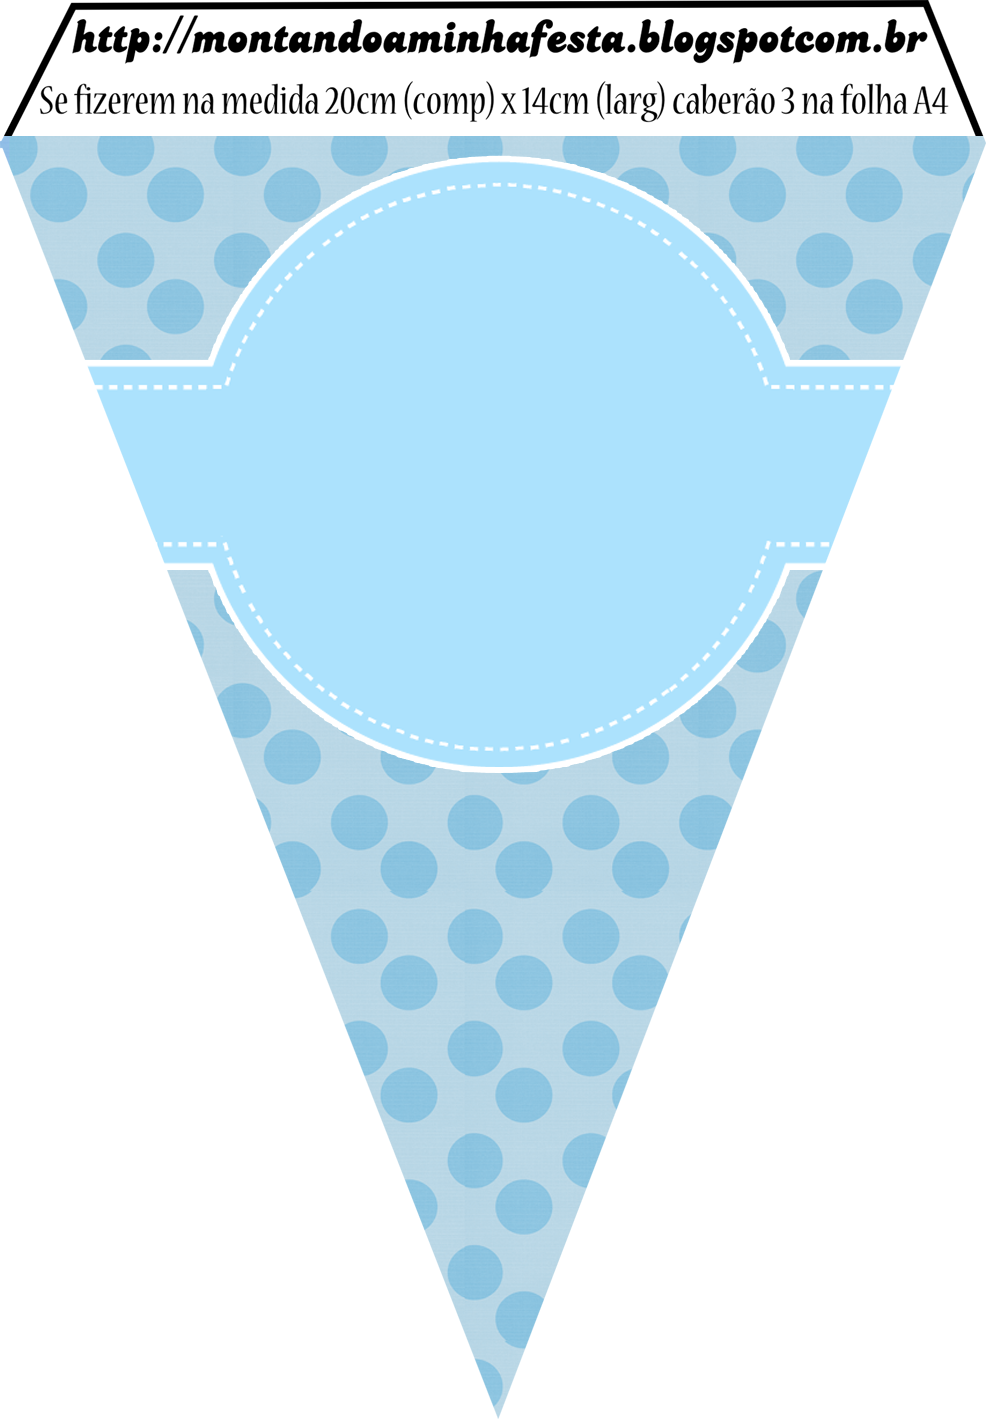 triangular clipart polka dot banner